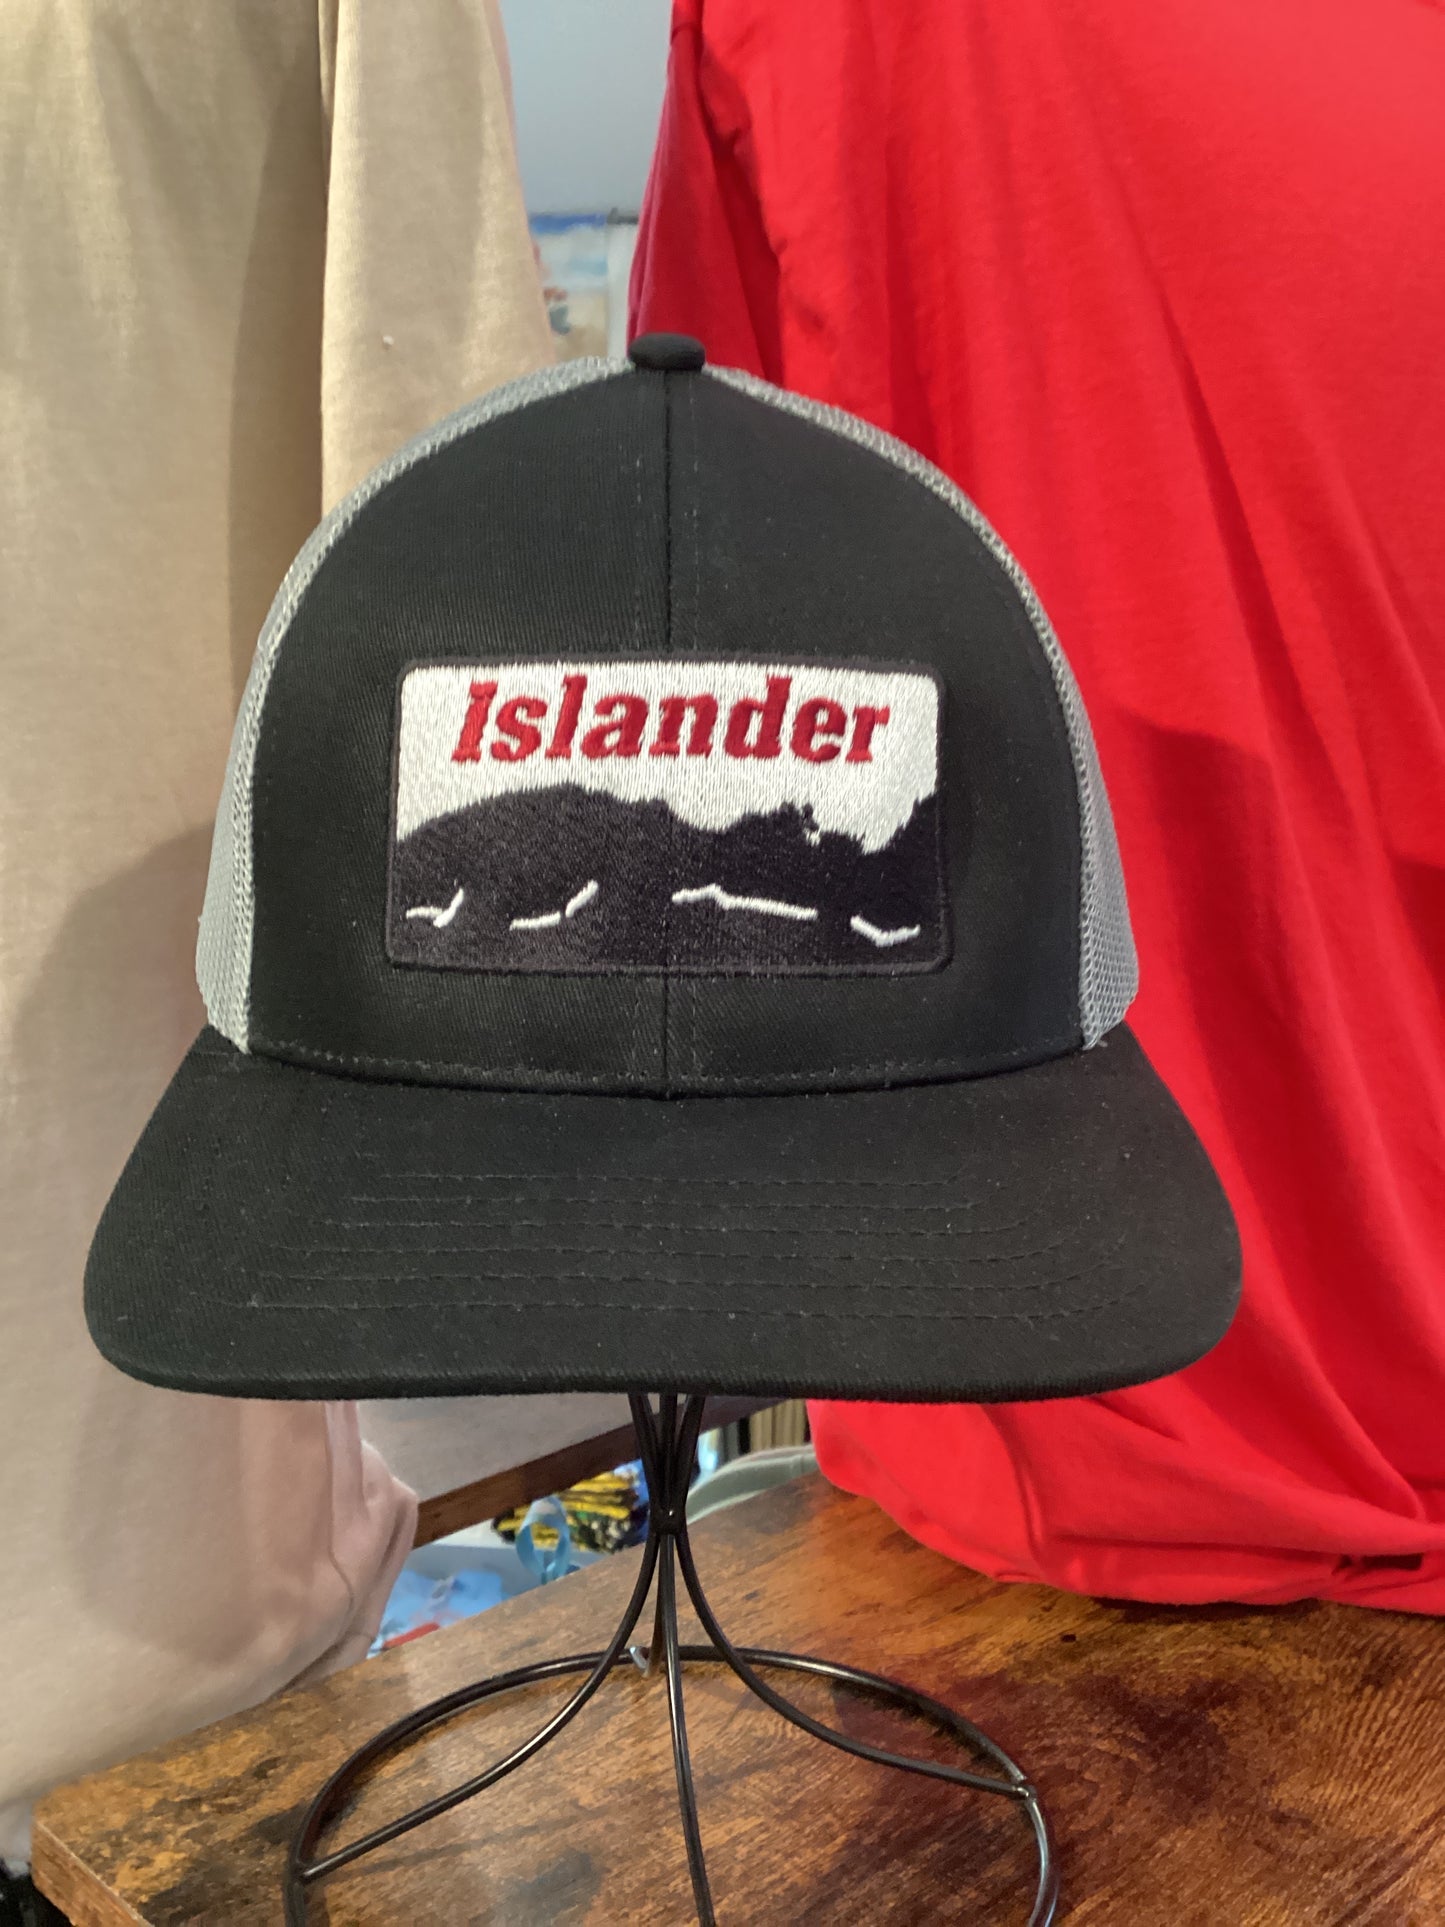 Islander coastline caps